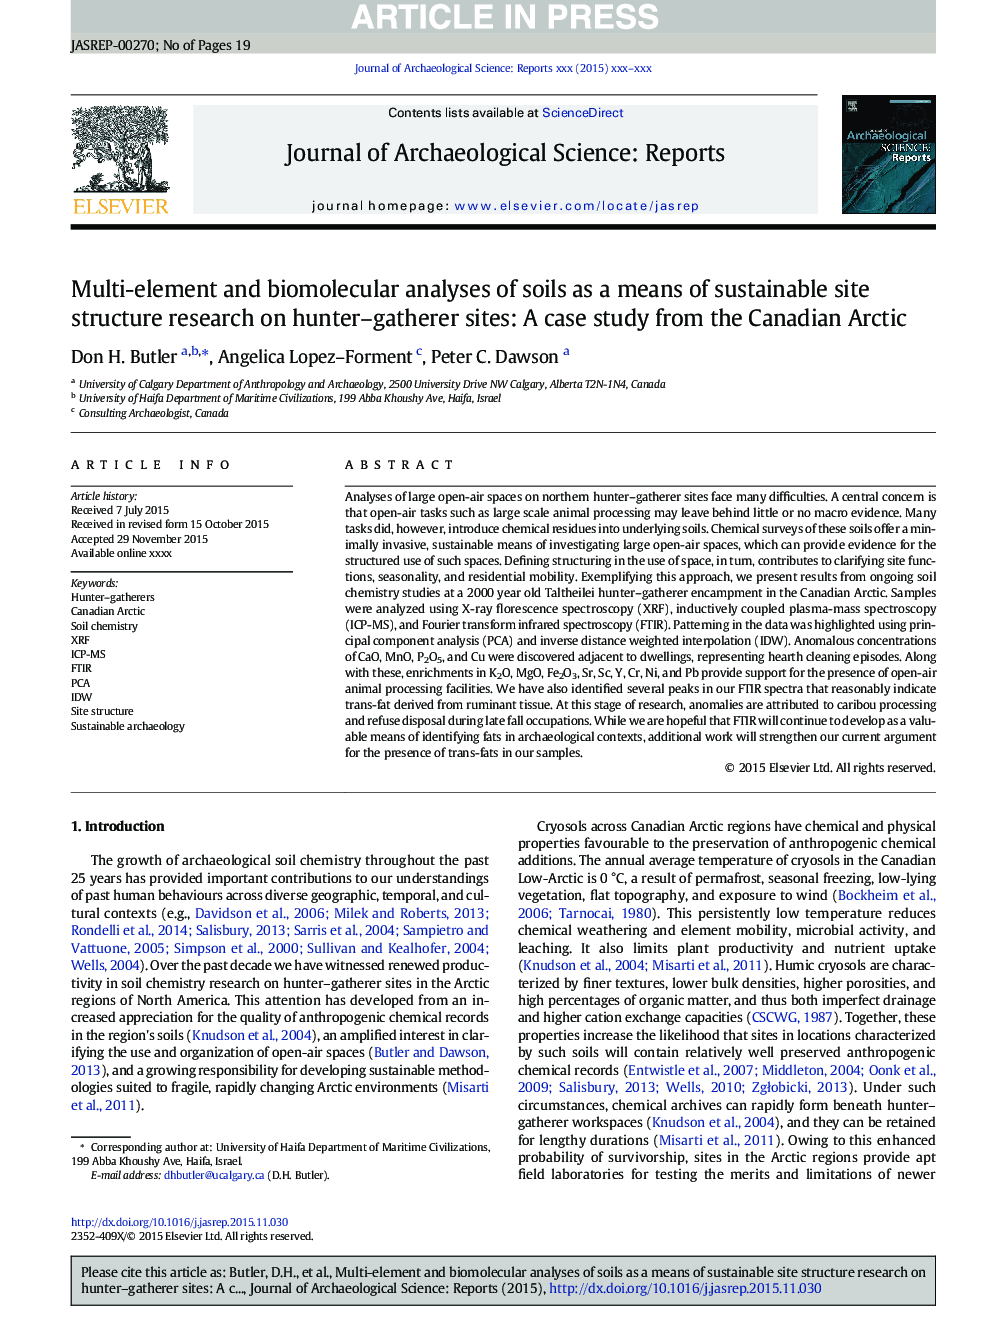 تجزیه و تحلیل چند مولکولی و بیولوژیکی خاک به عنوان وسیله ای برای تحقیق درباره ساختار سایت در سایت های شکارچی-جمع کننده: مطالعه موردی از قطب شمال کانادا 